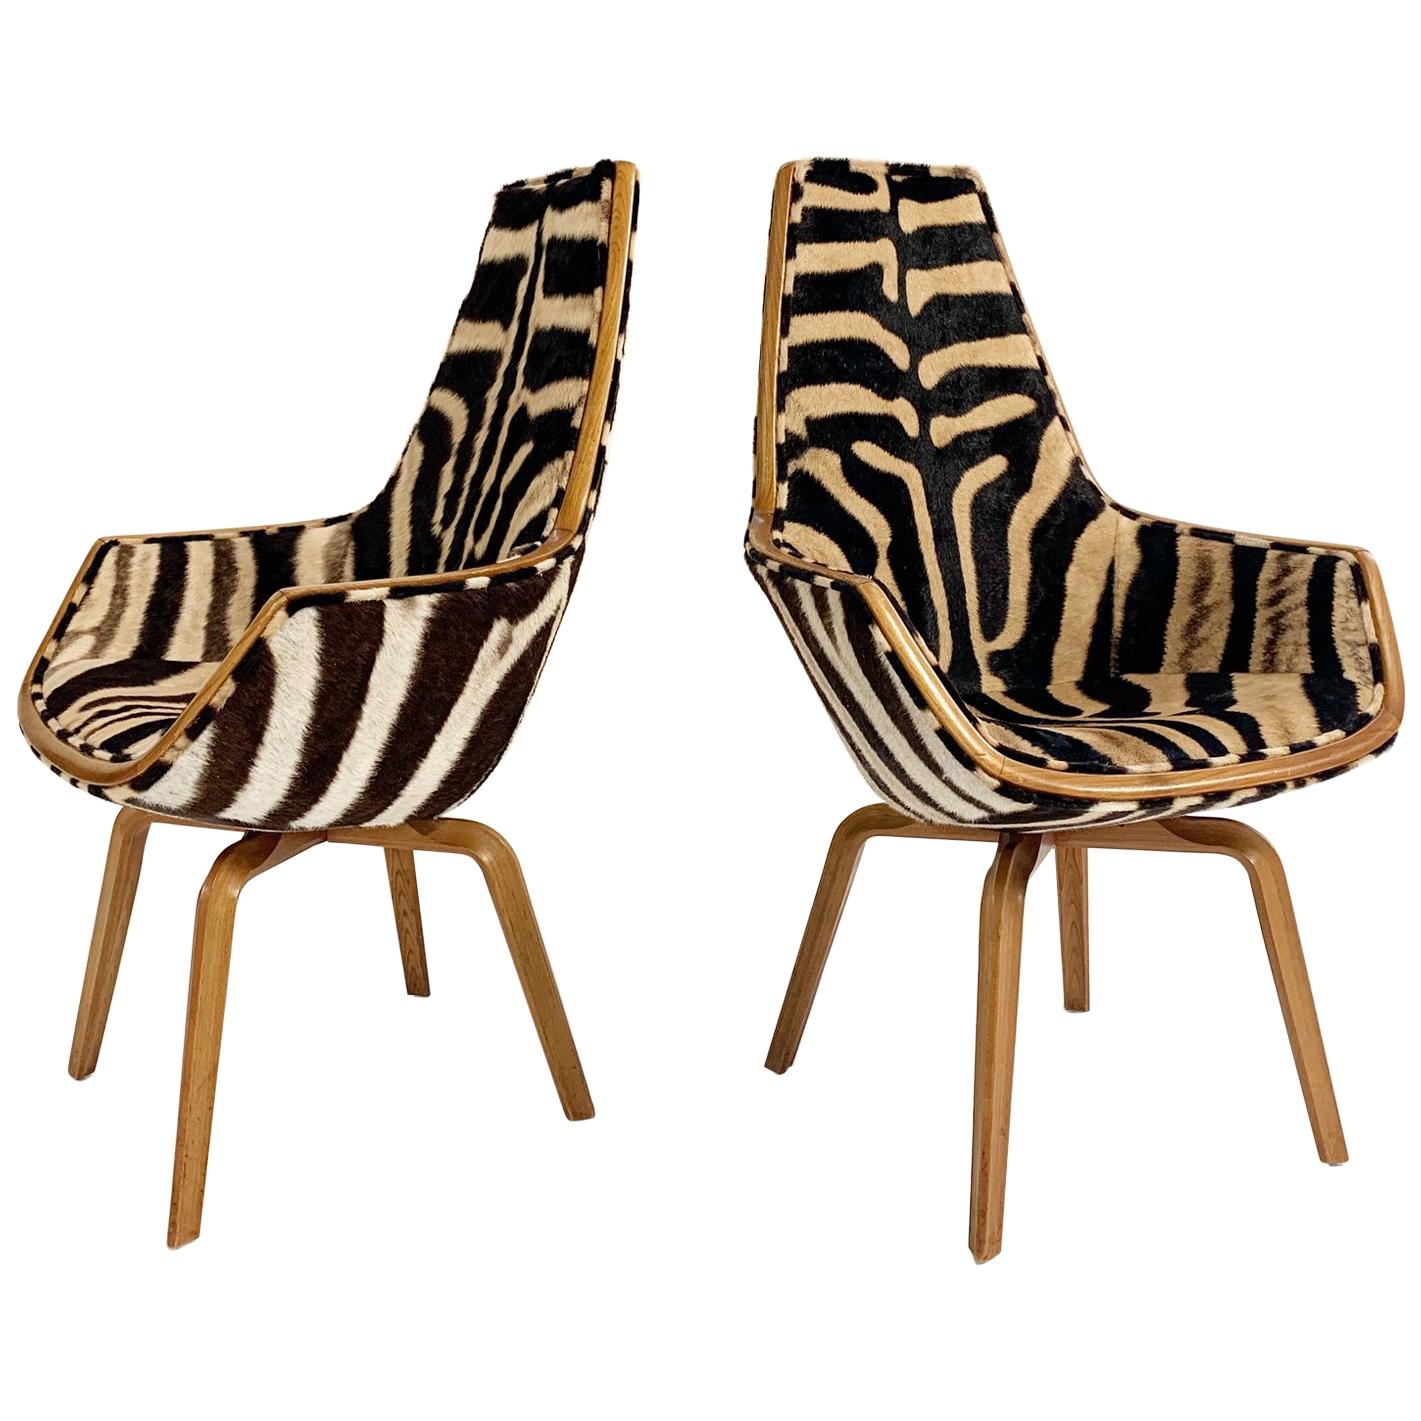 Rare Arne Jacobsen for Fritz Hansen Giraffe Chairs Restored in Zebra Hide, Pair